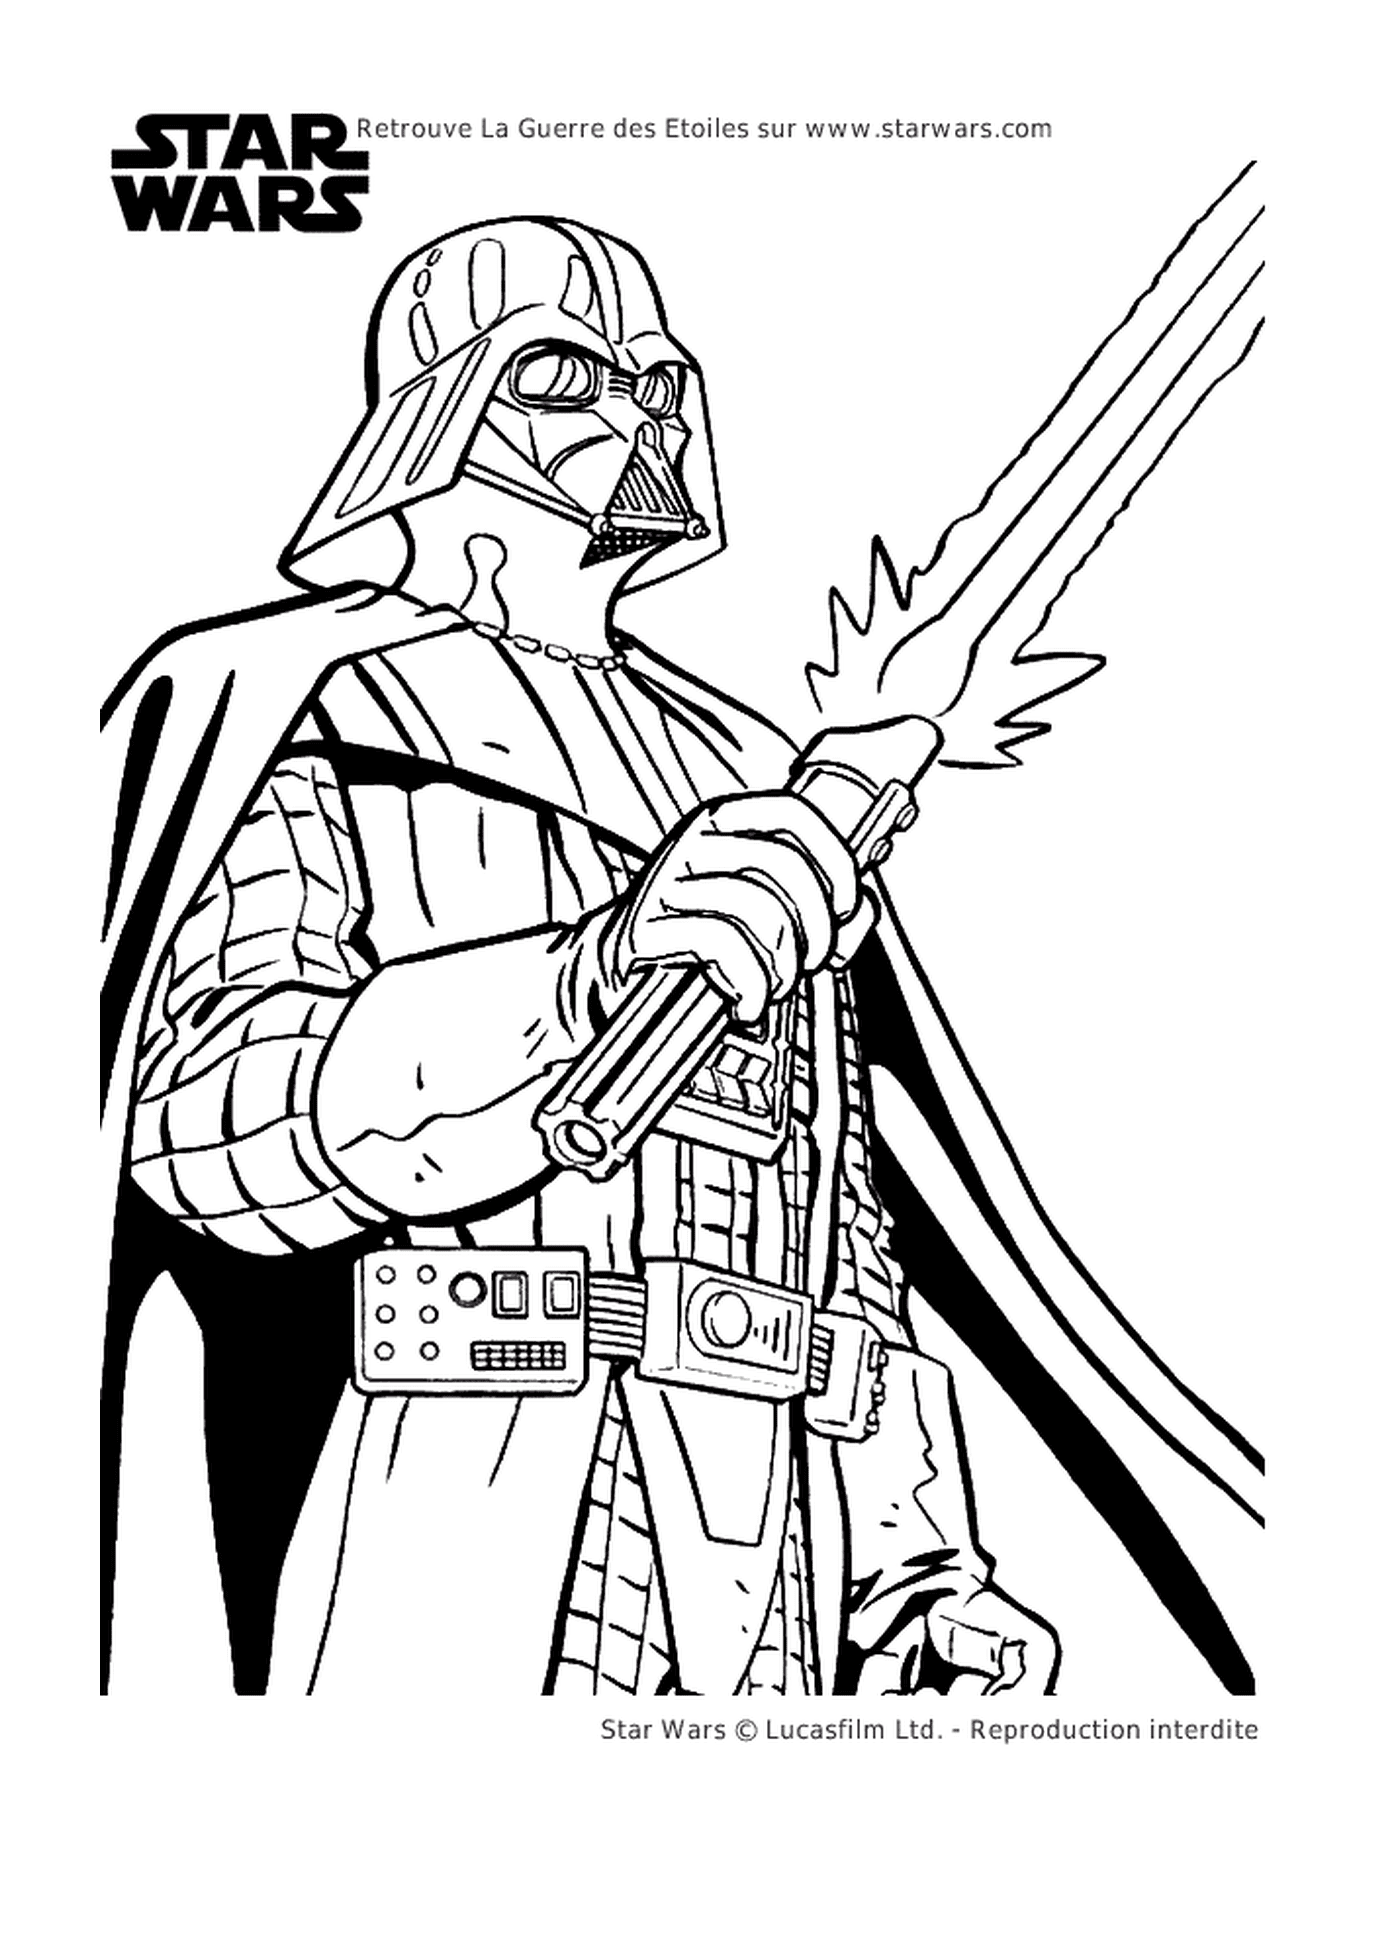  Darth Vader blandiendo una espada 